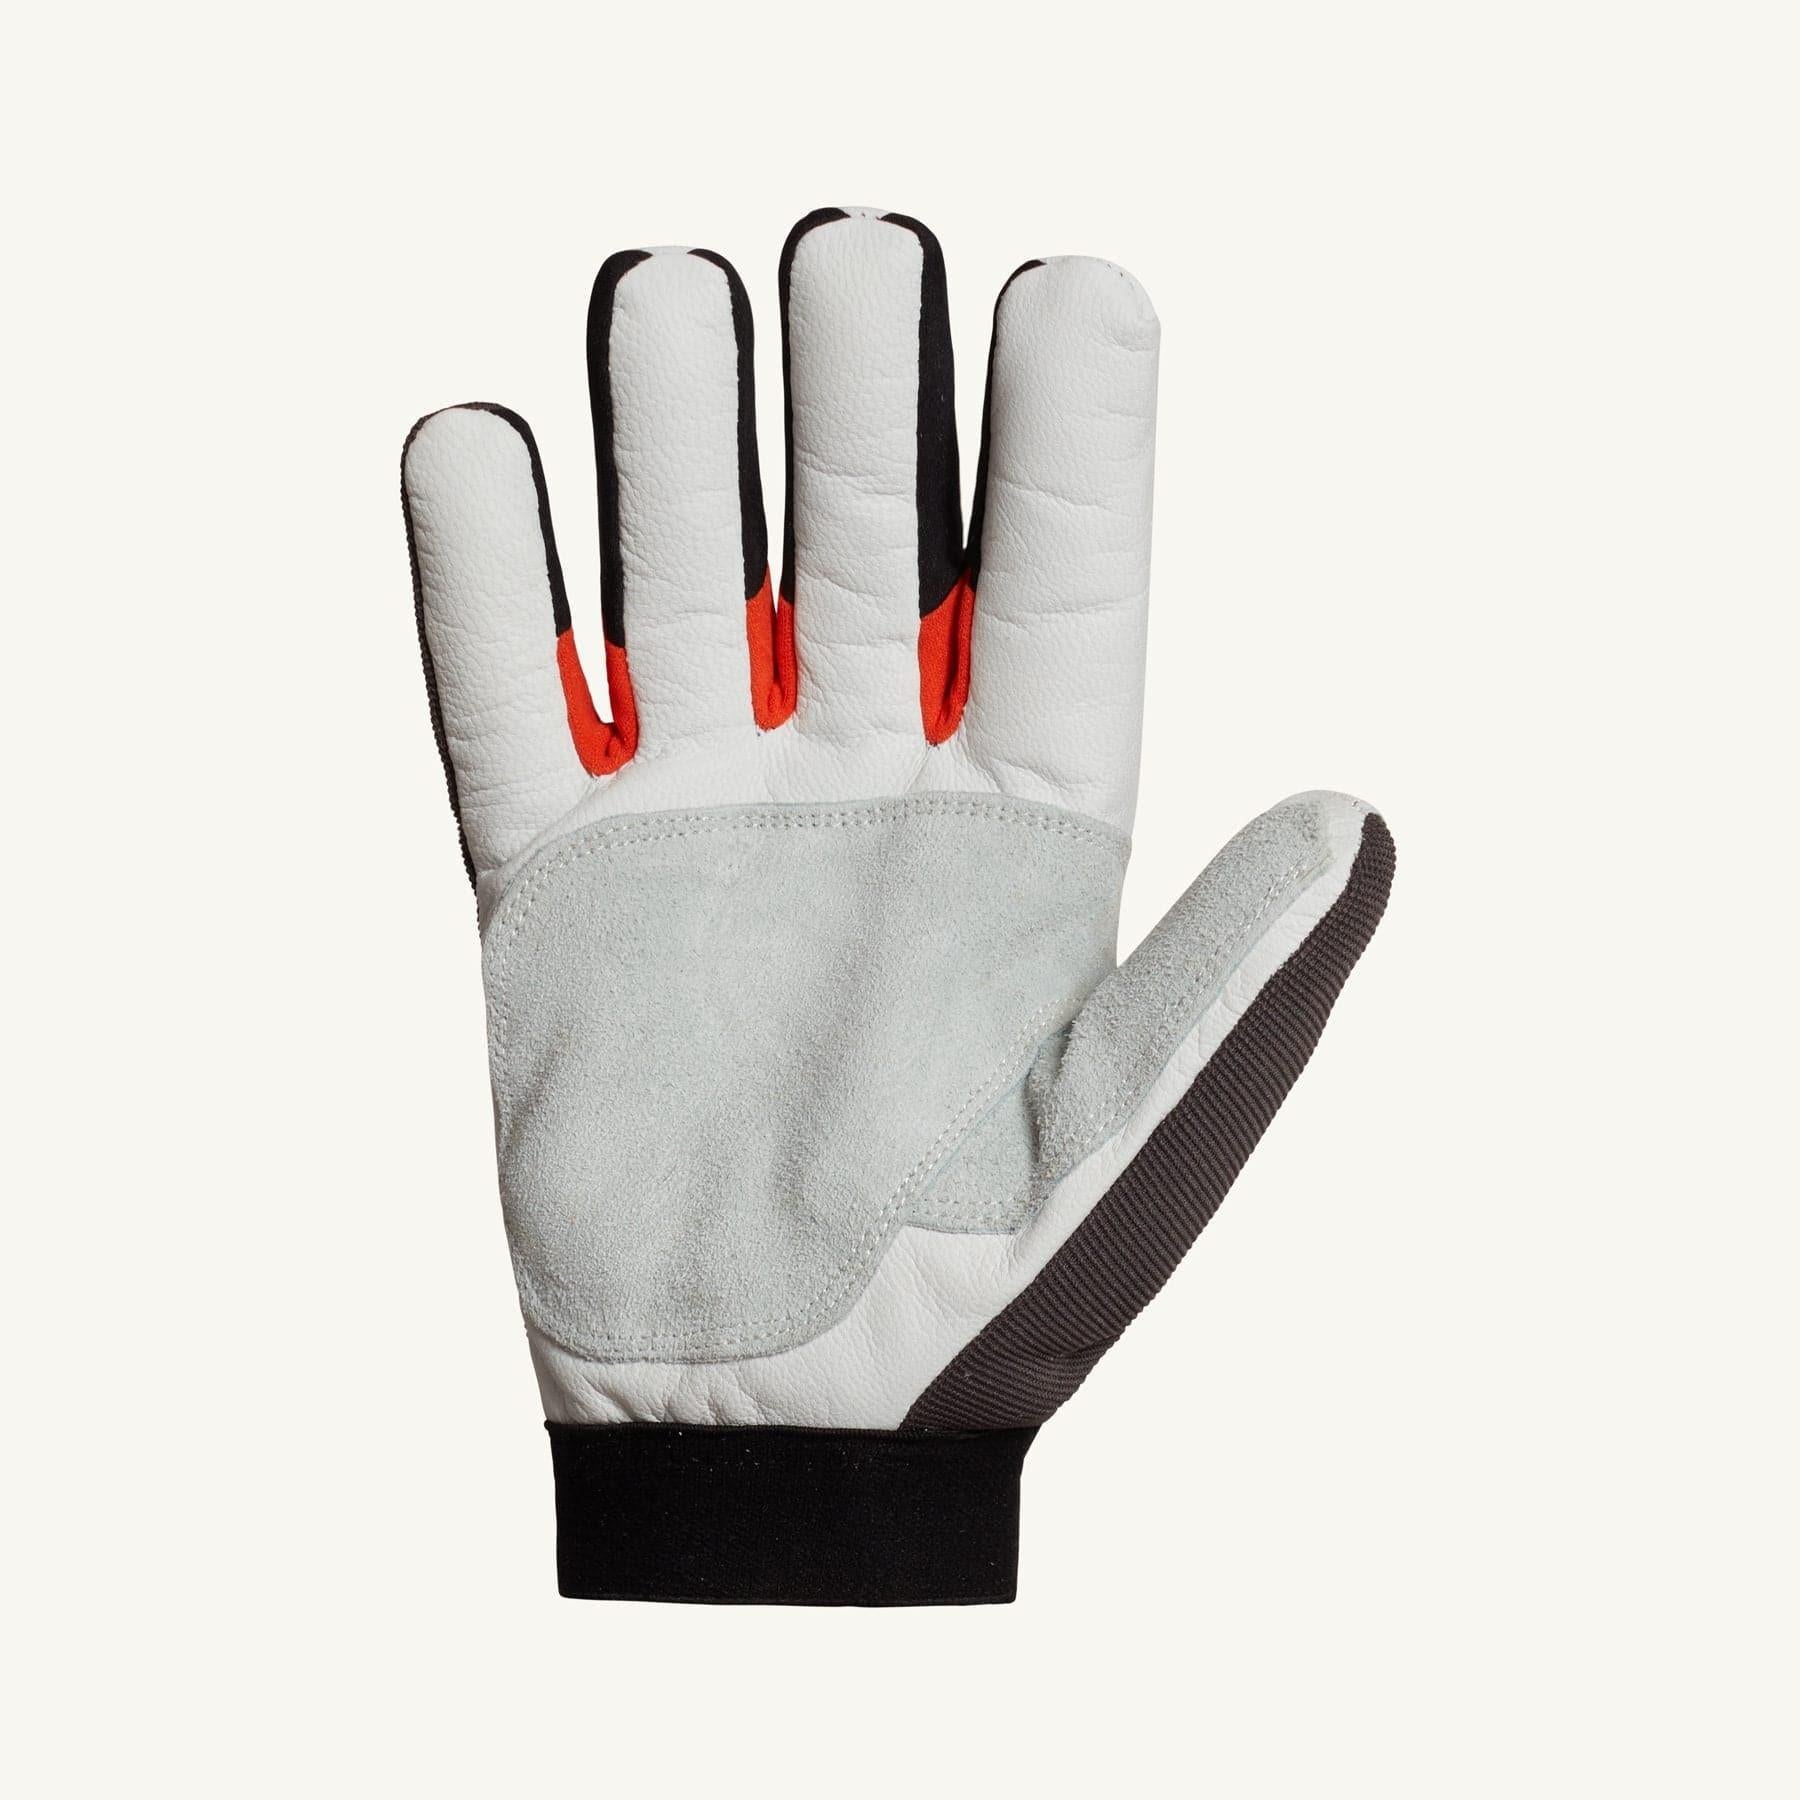 ClutchGear winter gloves